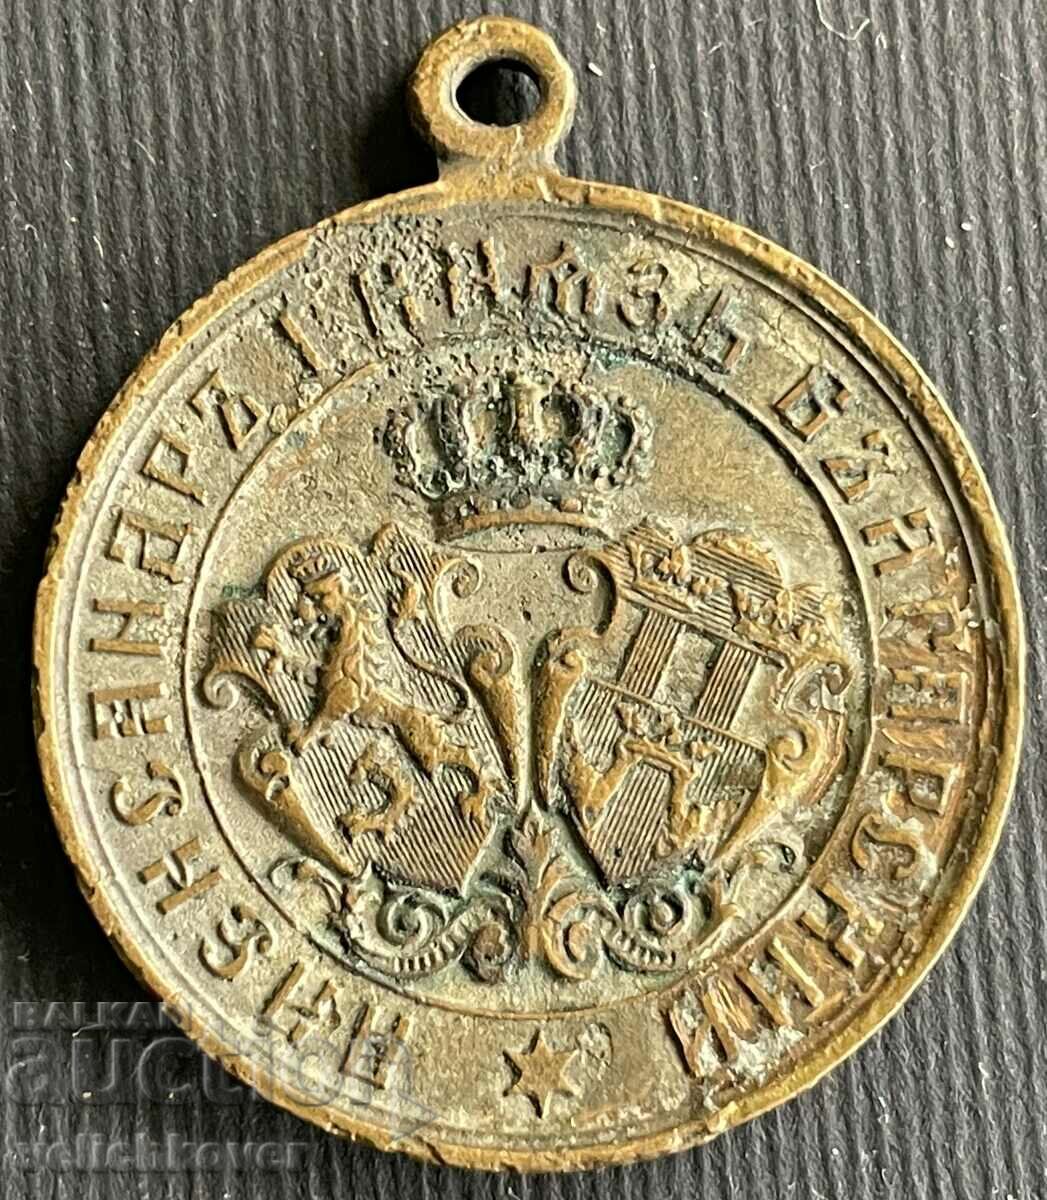 32335 Πριγκιπάτο της Βουλγαρίας χάλκινο μετάλλιο Σερβοβουλγαρικό ουρλιαχτό